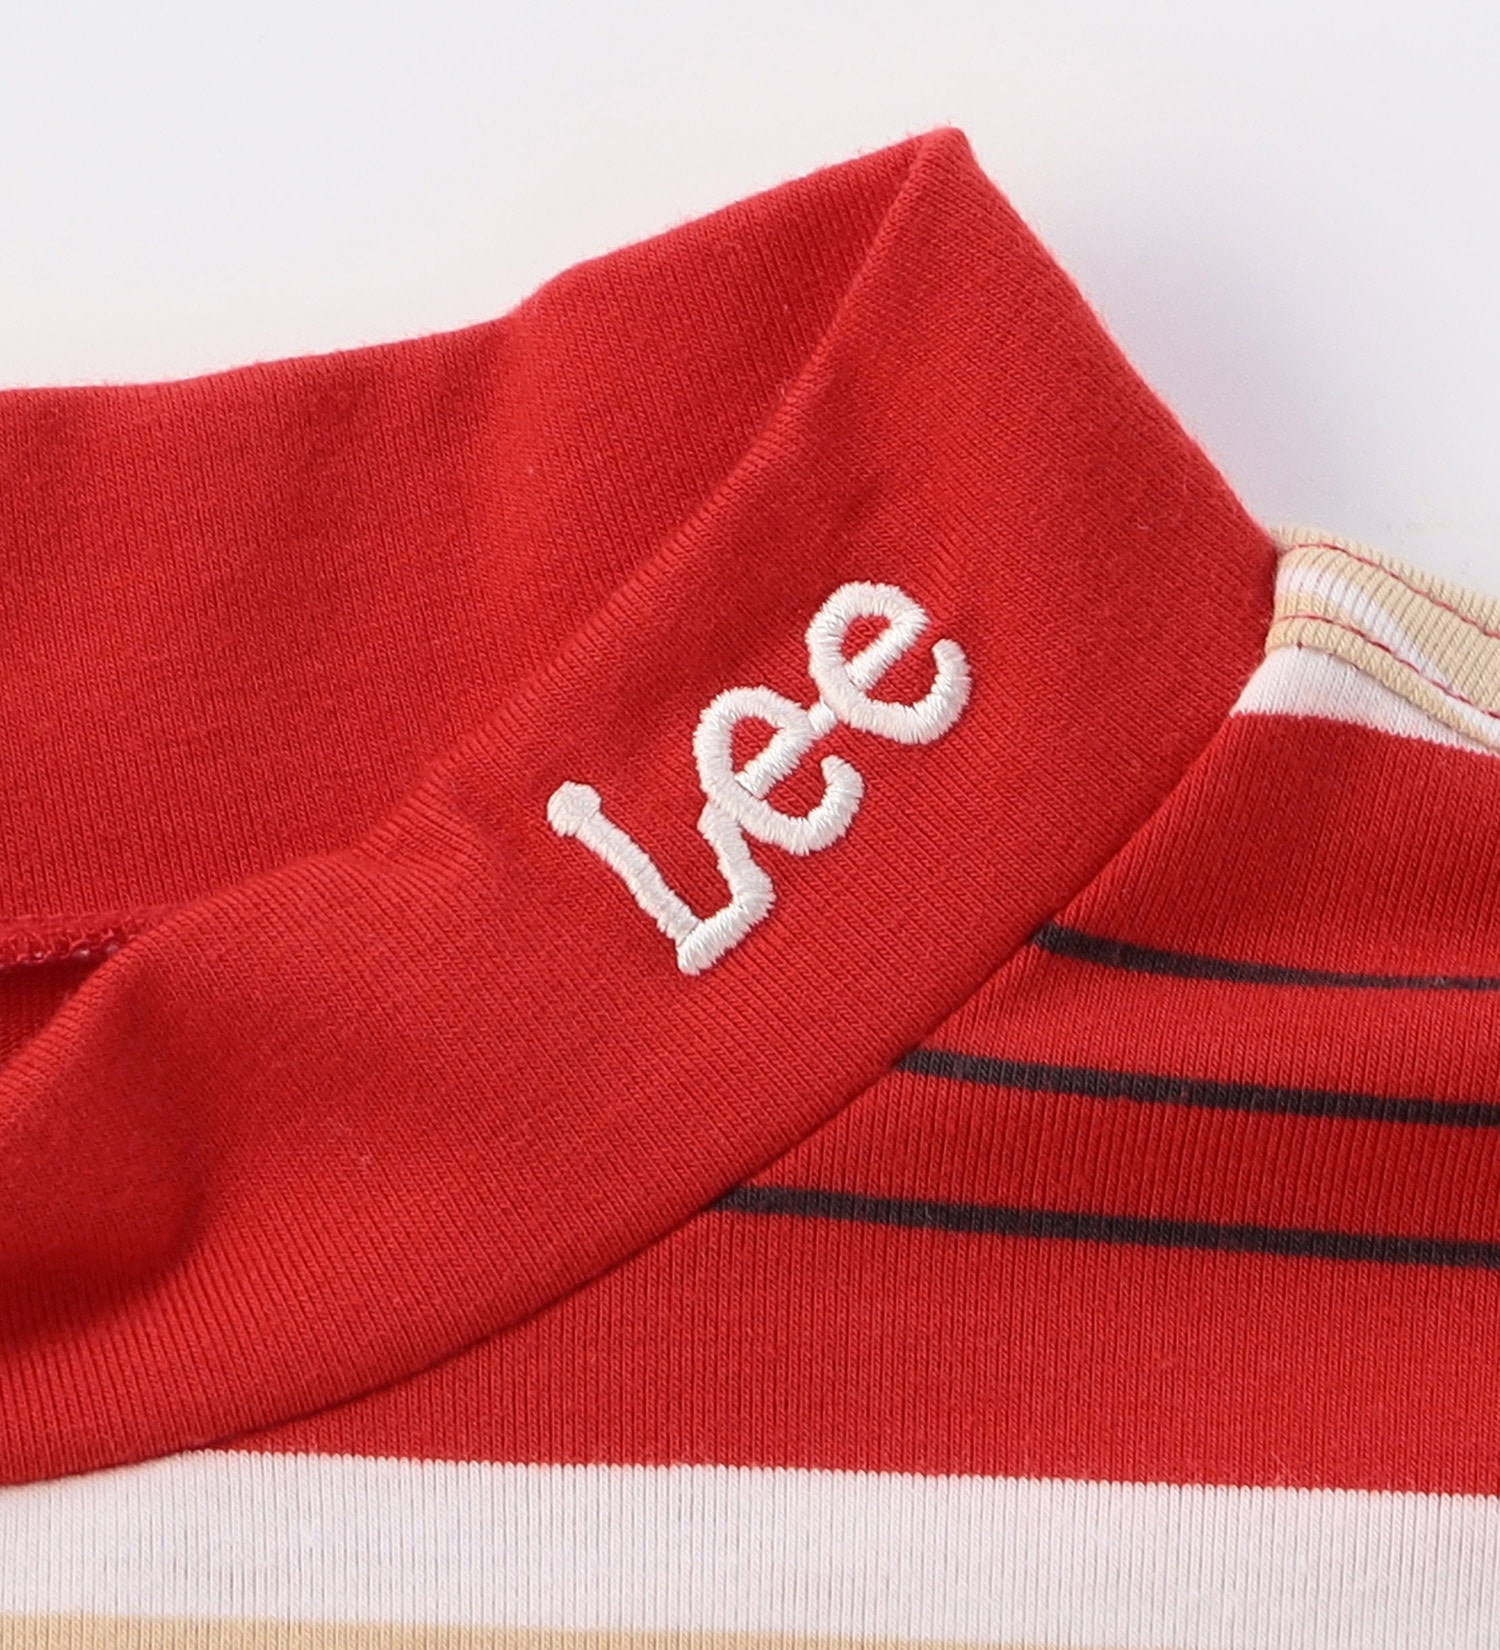 Lee(リー)の【GW SALE】【Lee GOLF】ボーダーモックネック半袖シャツ|トップス/Tシャツ/カットソー/メンズ|レッド